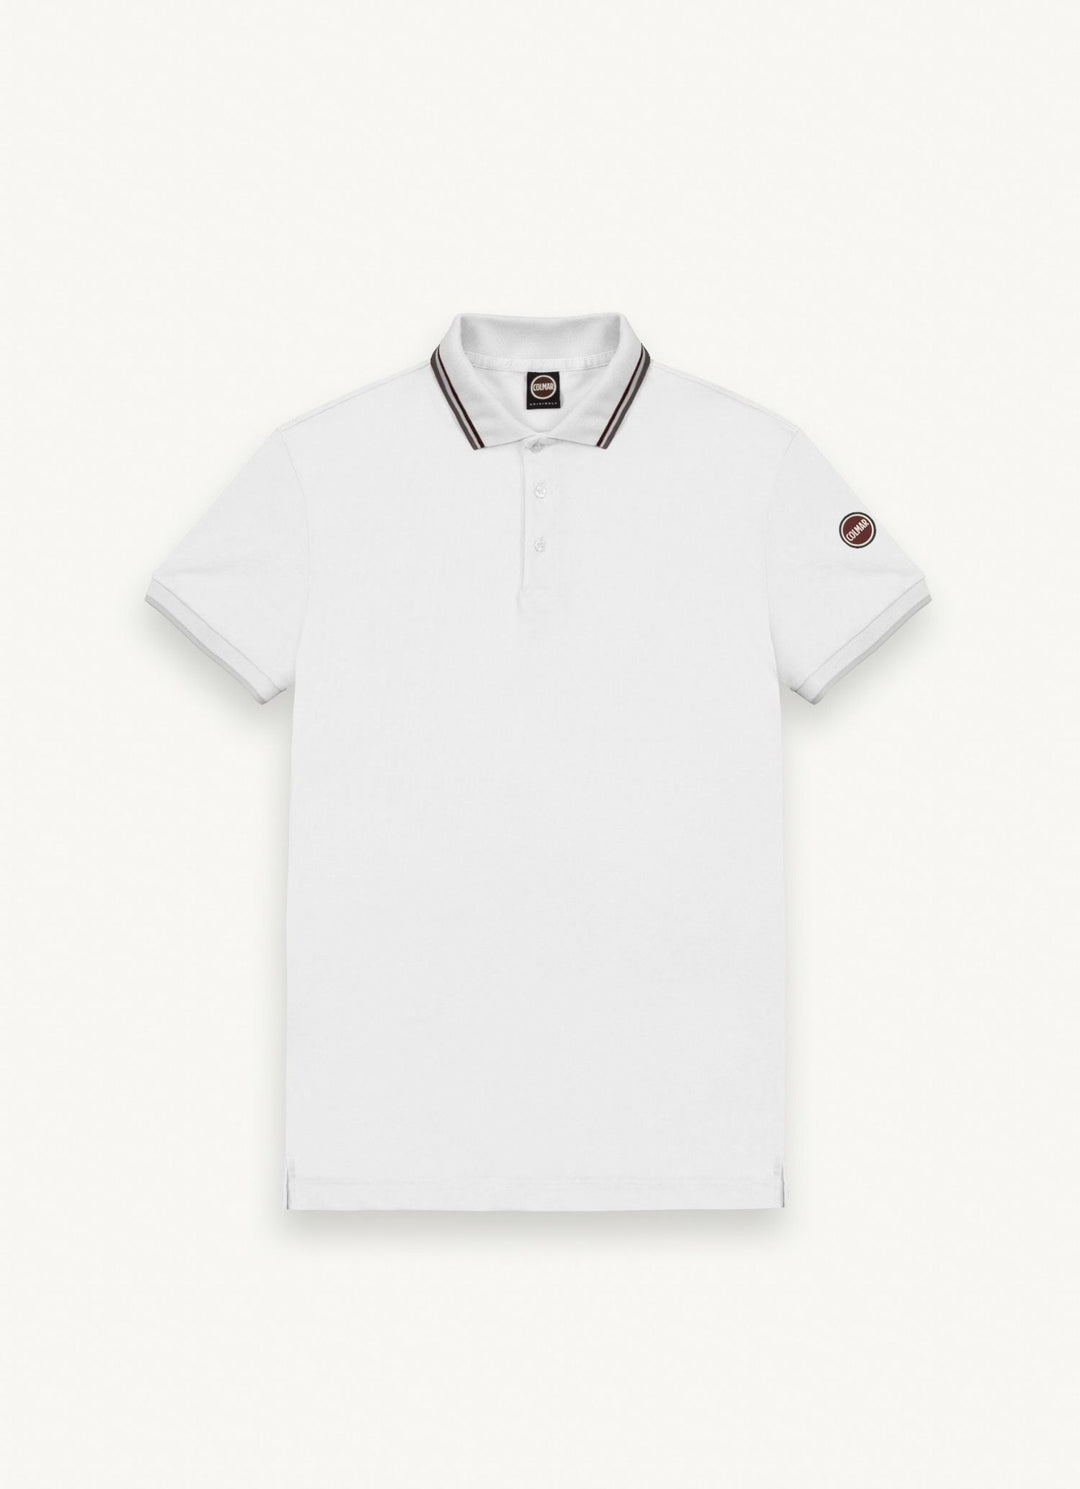 Junior T-Shirt - 01-White - Posh New York